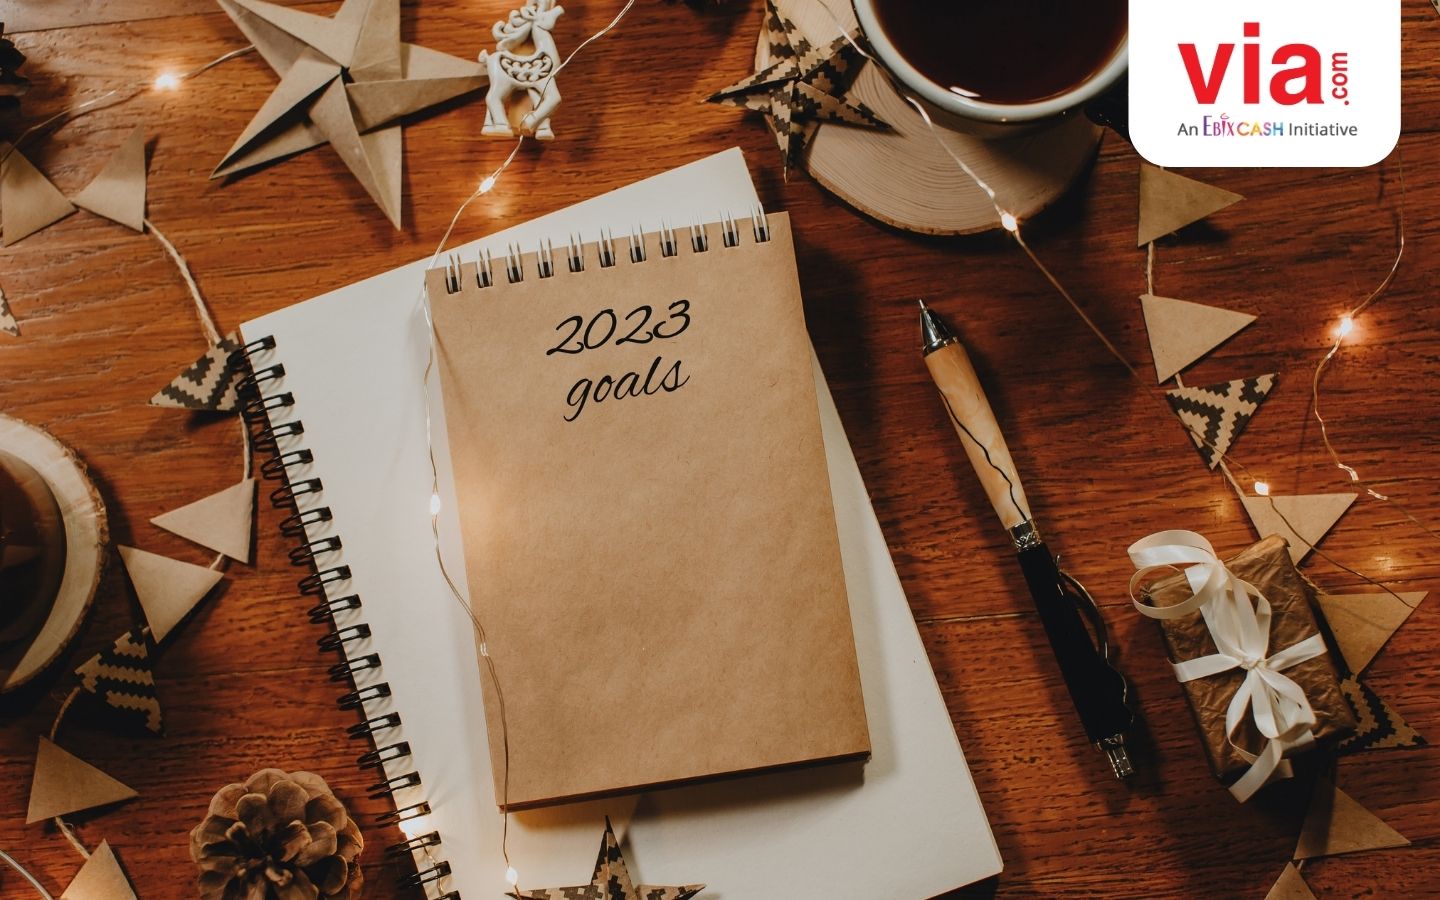 Sambut Tahun Baru 2023, Miliki 7 Resolusi Sederhana Ini